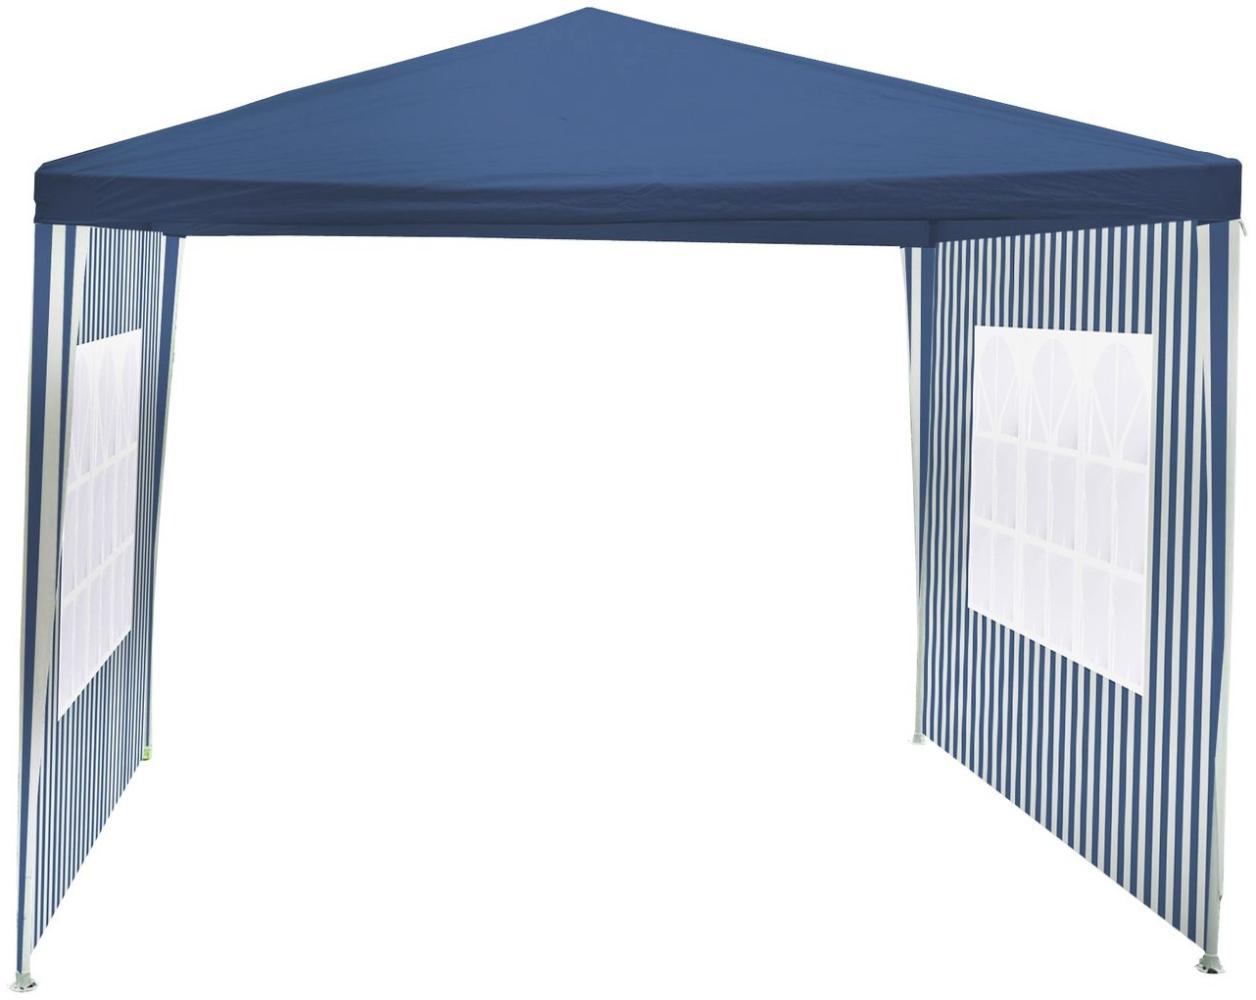 BURI Gartenpavillon Blau 3x3m Pavillon Partyzelt Gartenzelt Zelt wasserabweisend Bild 1